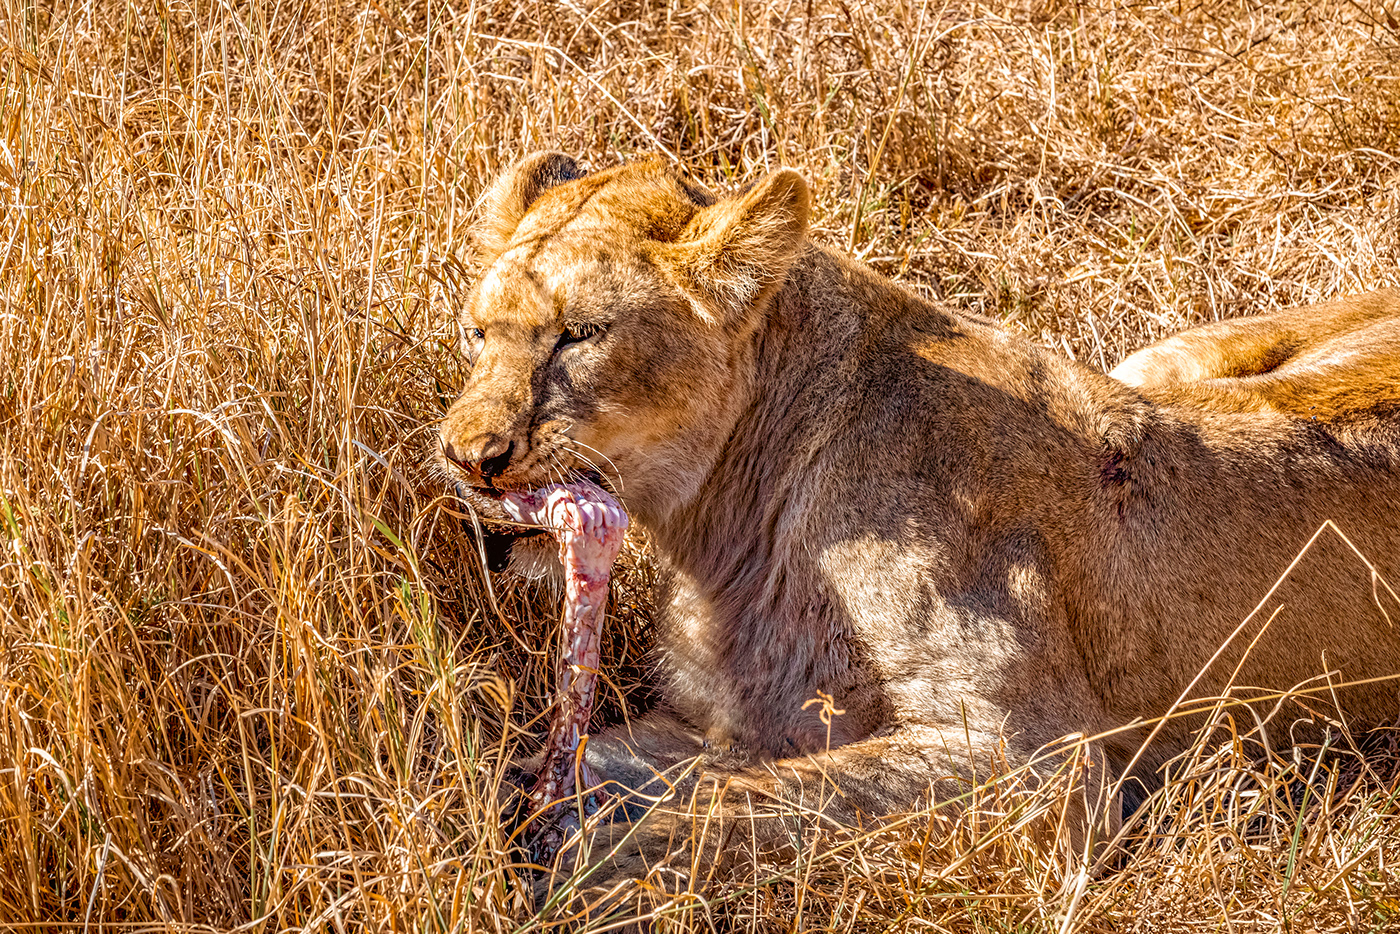 Ngorongoro Tanzania africa Nature Lions wildlife animals Landscape Travel Photography 